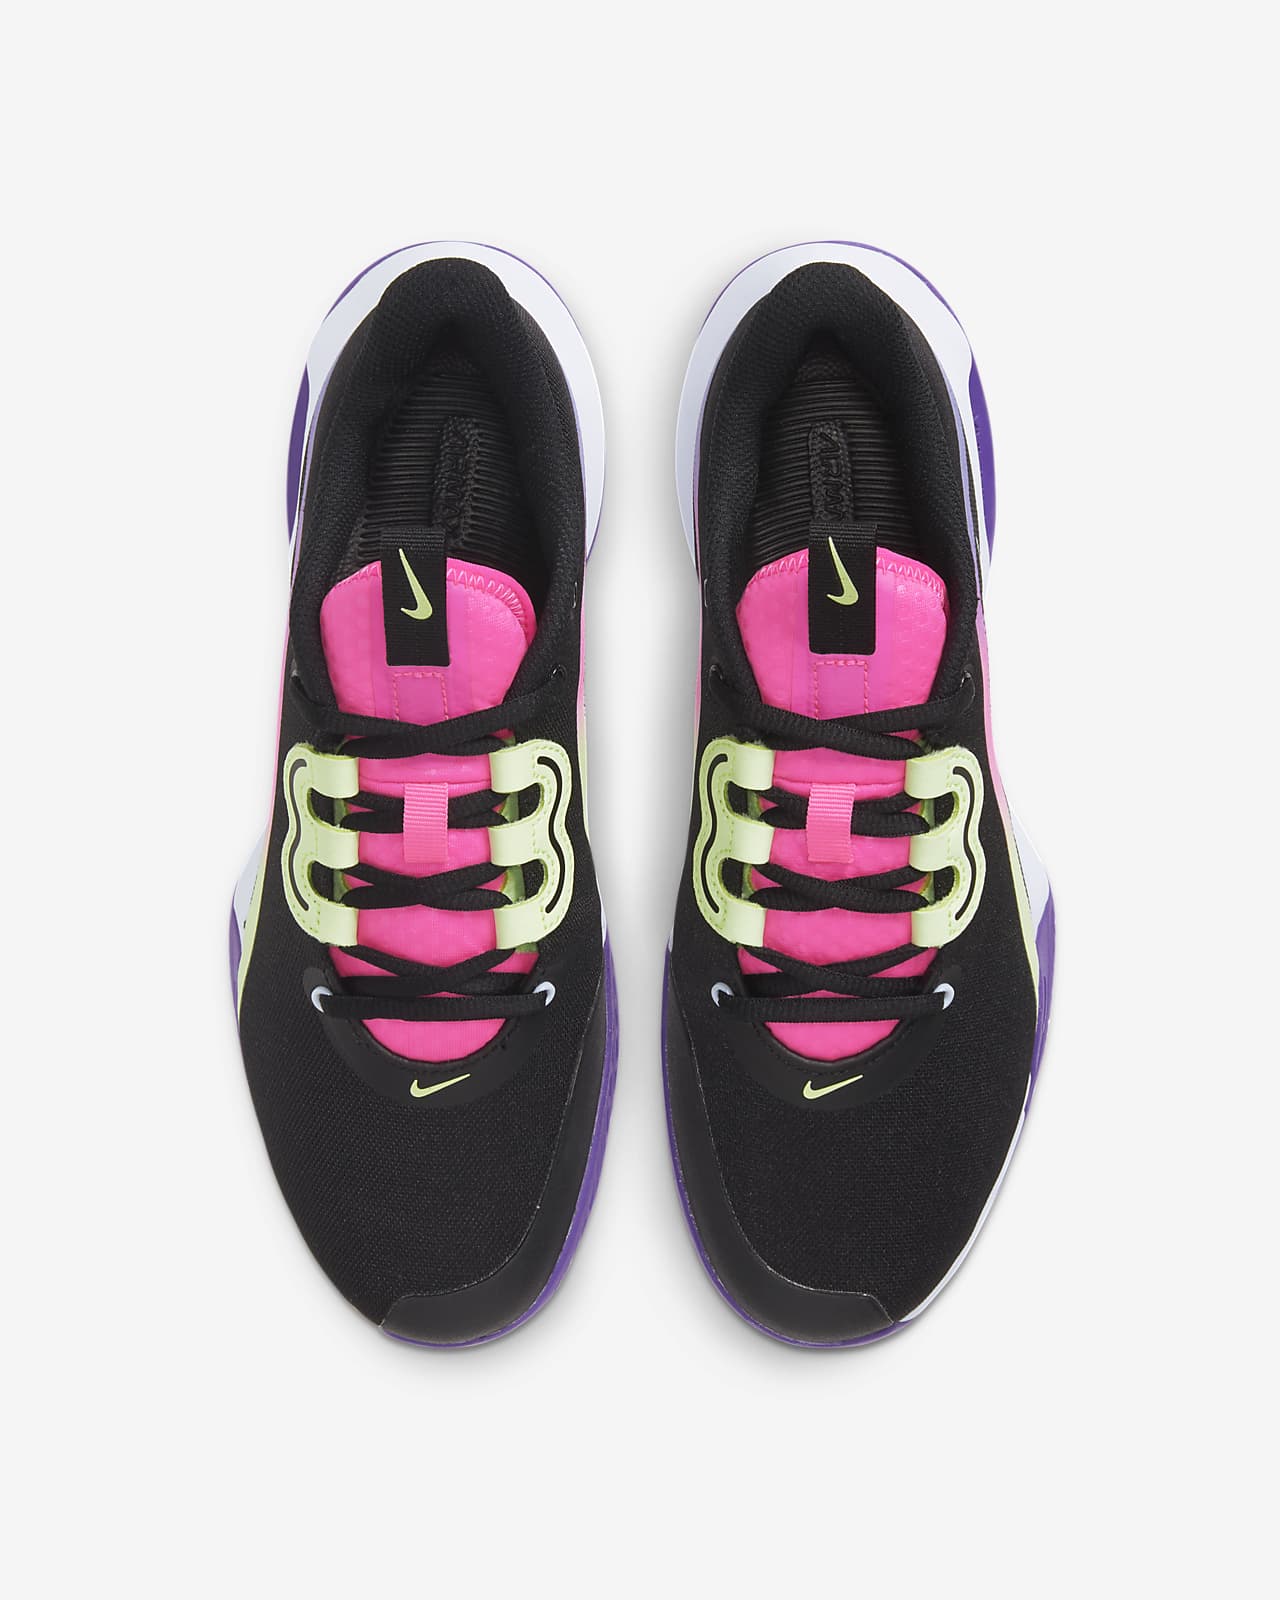 Hard-Court Tennis Shoe. Nike LU